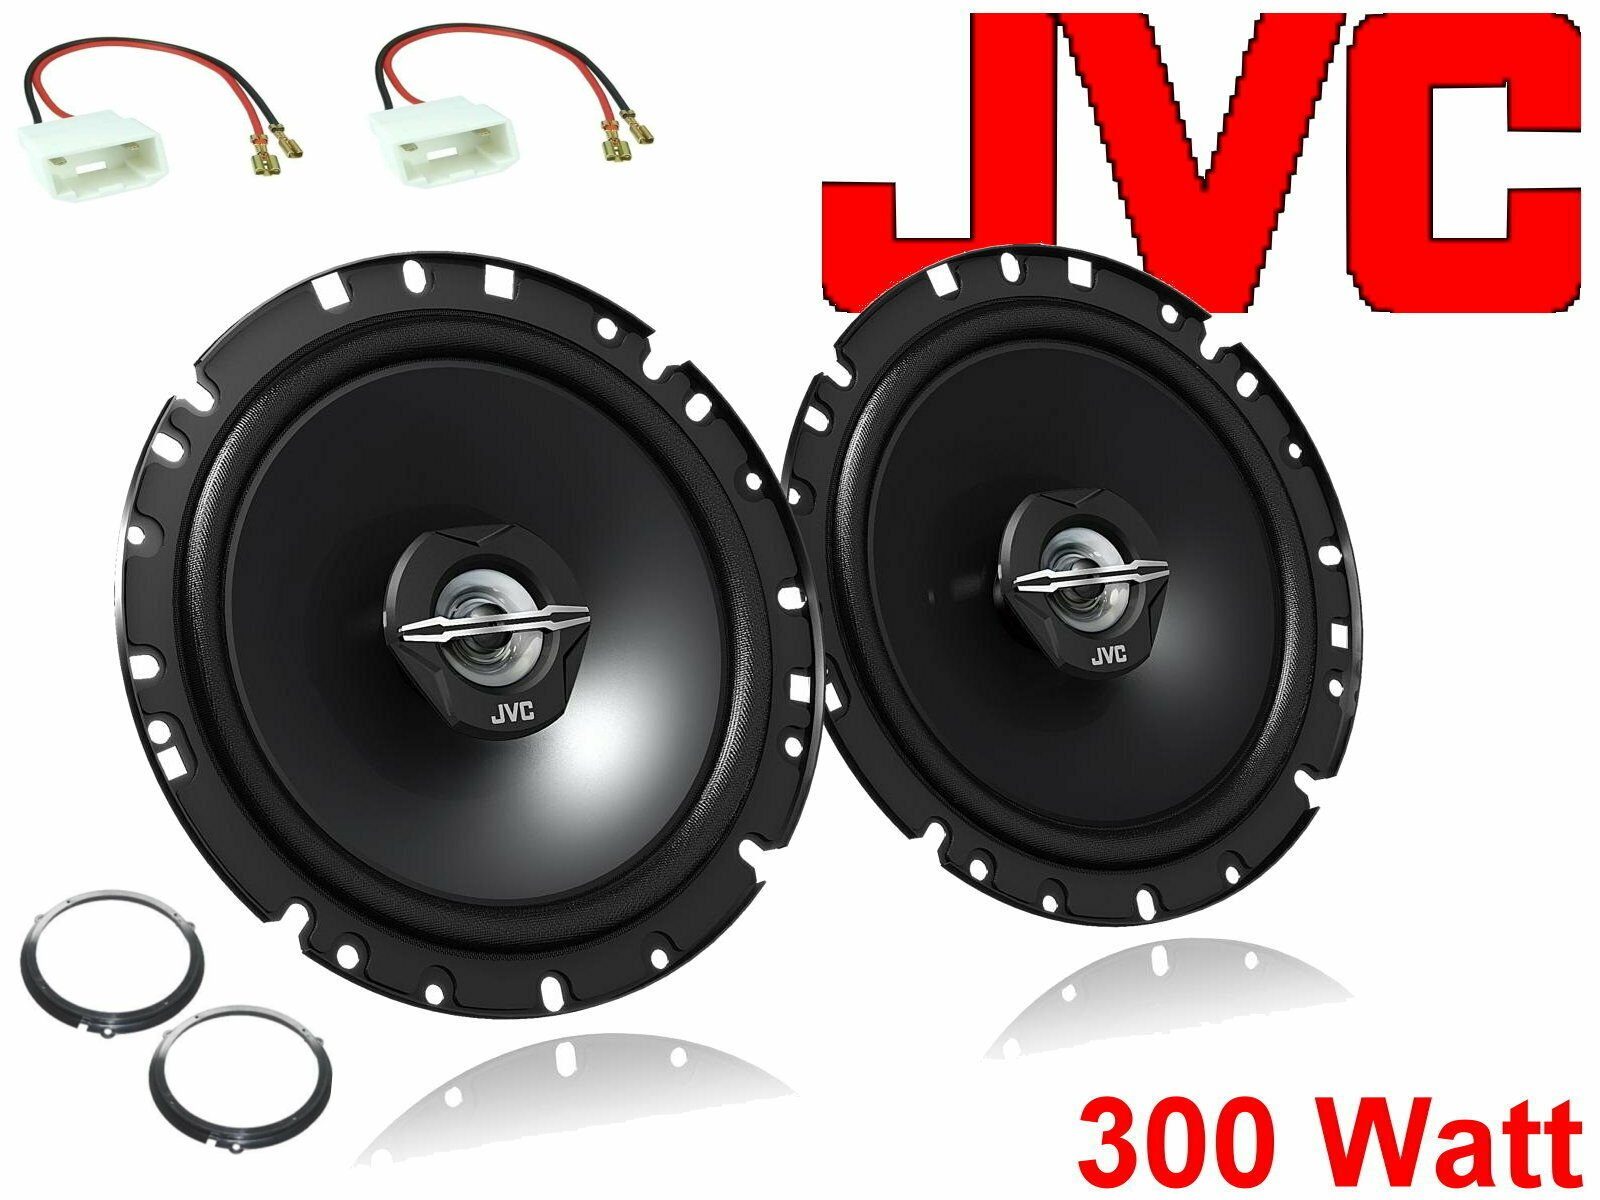 DSX JVC passend für Ford Fiesta Mk7 Bj 08/08-17 Lauts Auto-Lautsprecher (30 W)